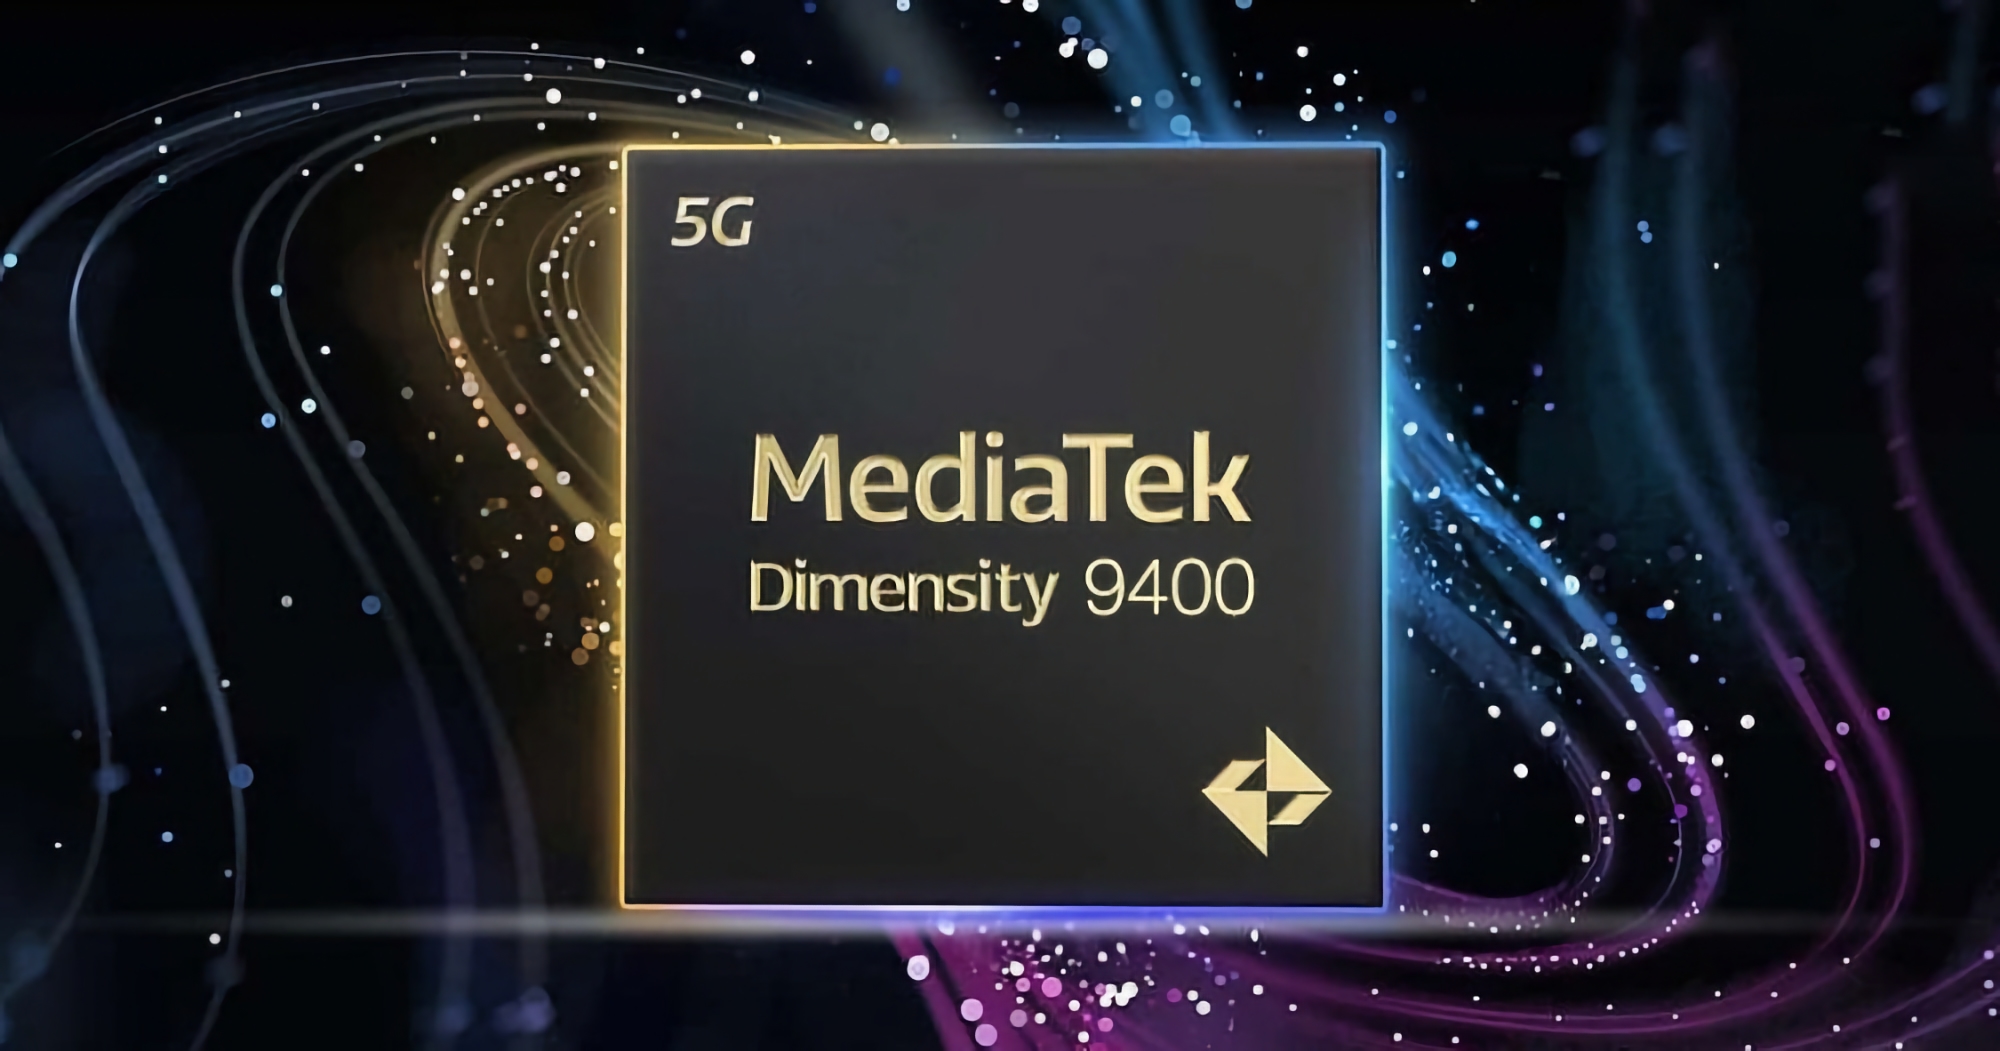 Rdzeń Cortex-X5 i zwiększona wydajność energetyczna: osoba mająca dostęp do informacji poufnych ujawniła kilka szczegółów na temat układu Dimensity 9400 firmy MediaTek.